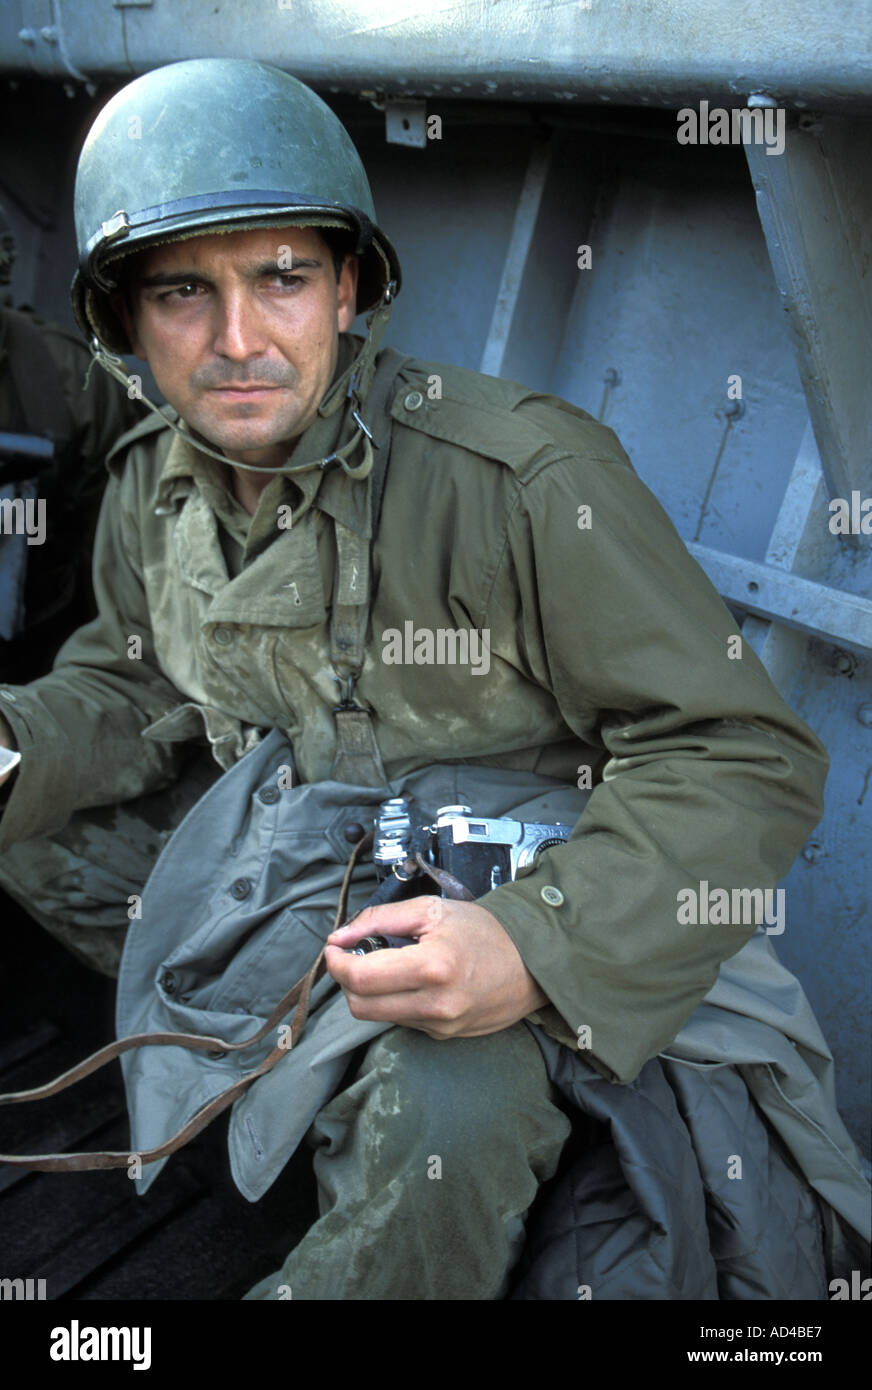 Jugar famoso fotógrafo de guerra Robert Capa en el desembarco en Discovery  Channel película: "Regreso a Normandía" con Tom Broka Fotografía de stock -  Alamy